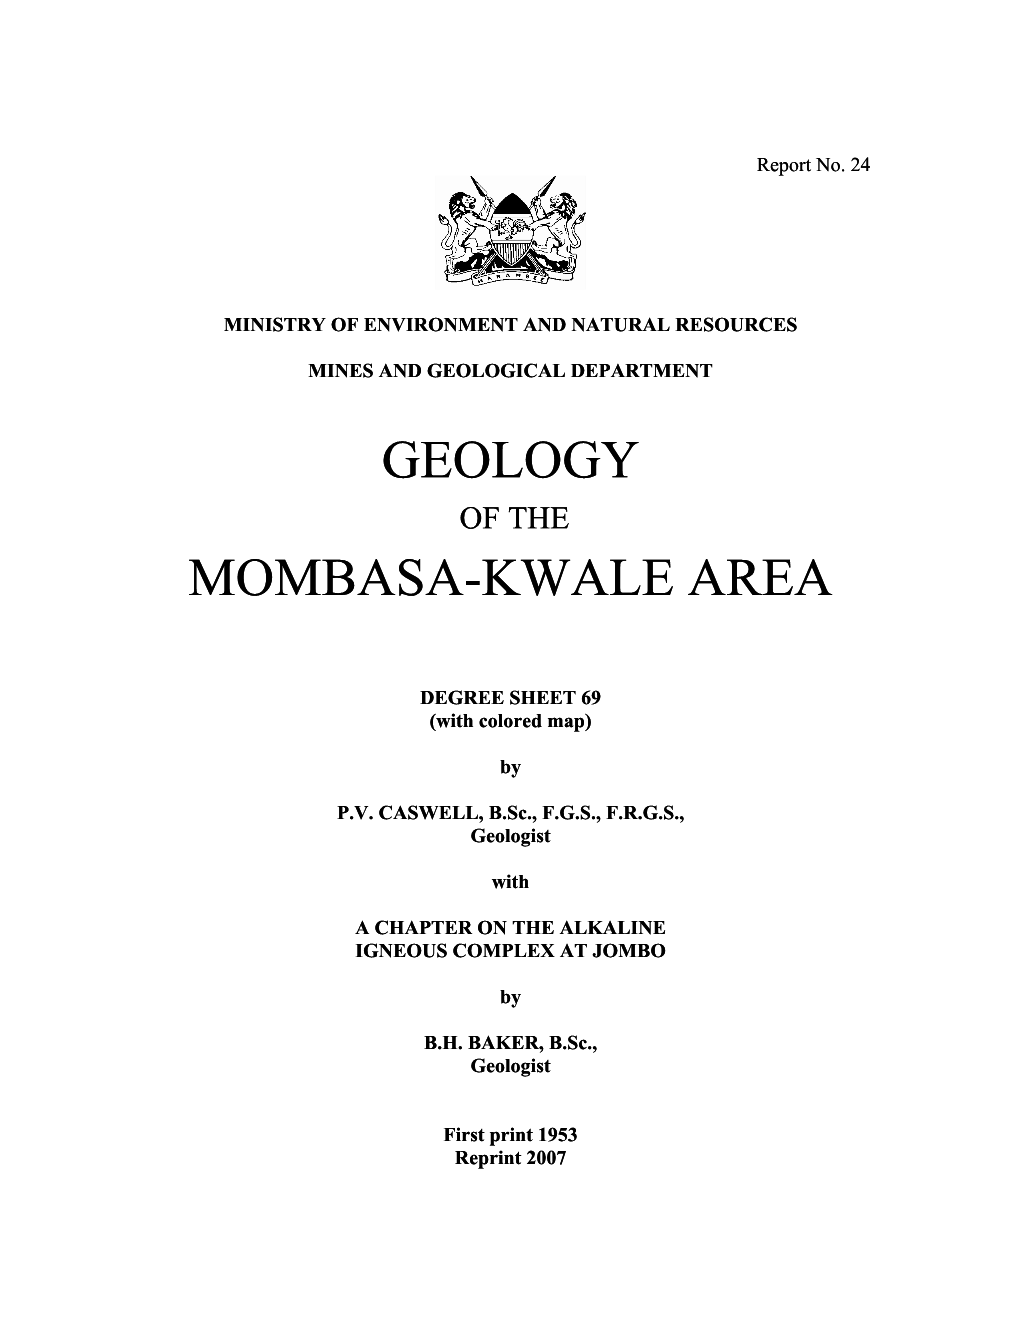 Geology of the Mombasa Kwale Area